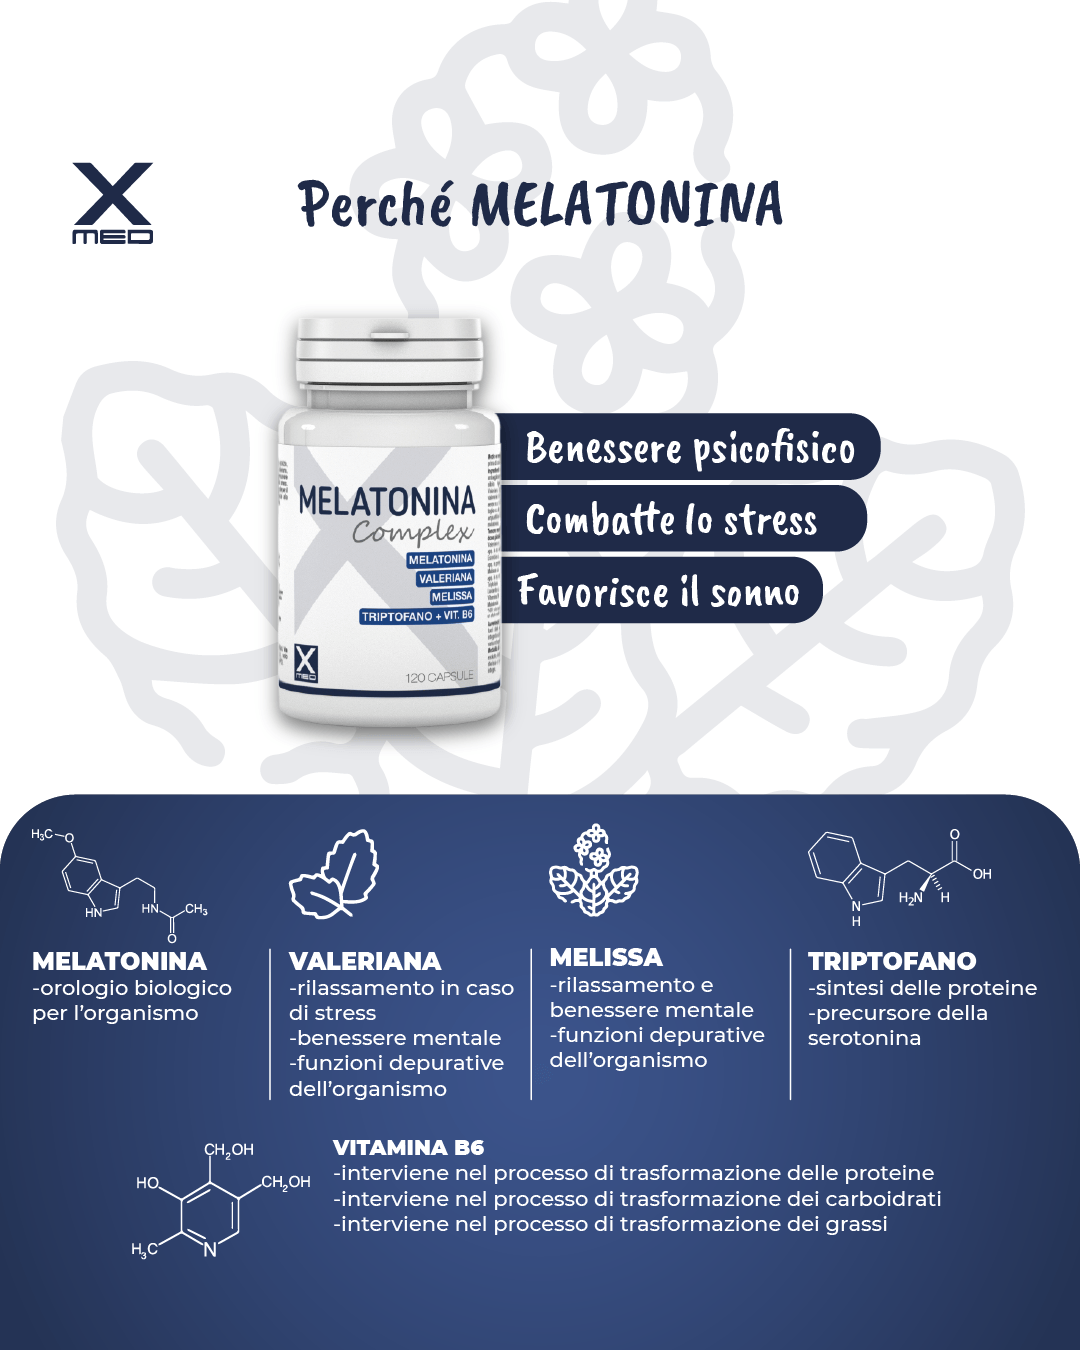 XMed Online – Melatonina Complex (2)